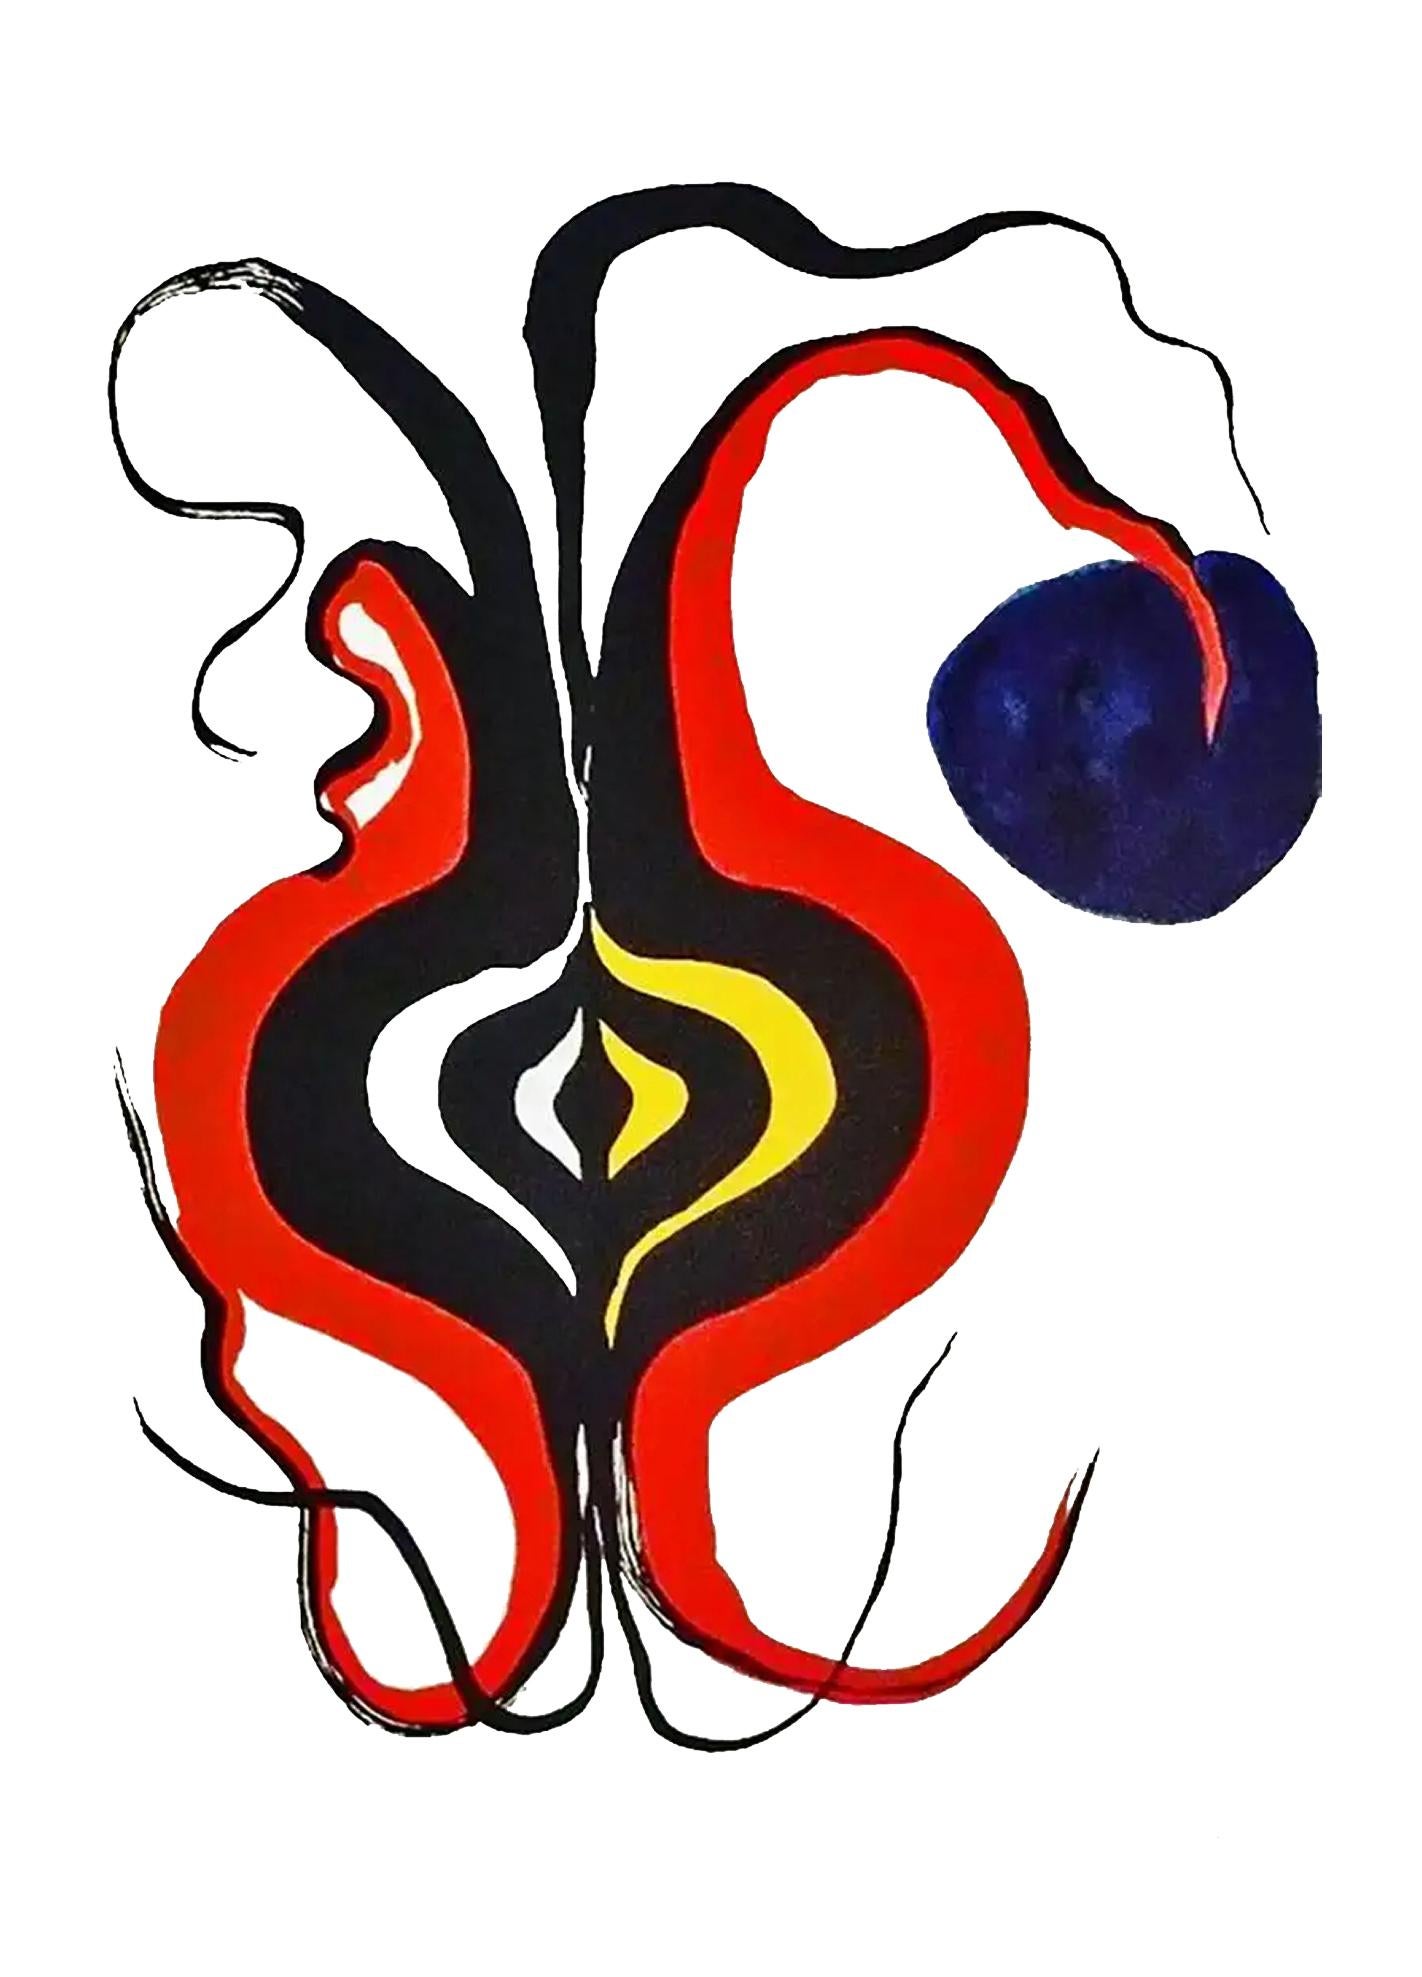 Alexander Calder Lithographie c. 1967 de Derrière le miroir :

Lithographie en couleurs ; 15 x 11 pouces.
Très bon état général ; bien conservé.
Non signé d'une édition d'inconnus.
De : Derrière le miroir. Imprimé en France.

Derrière le miroir :
En